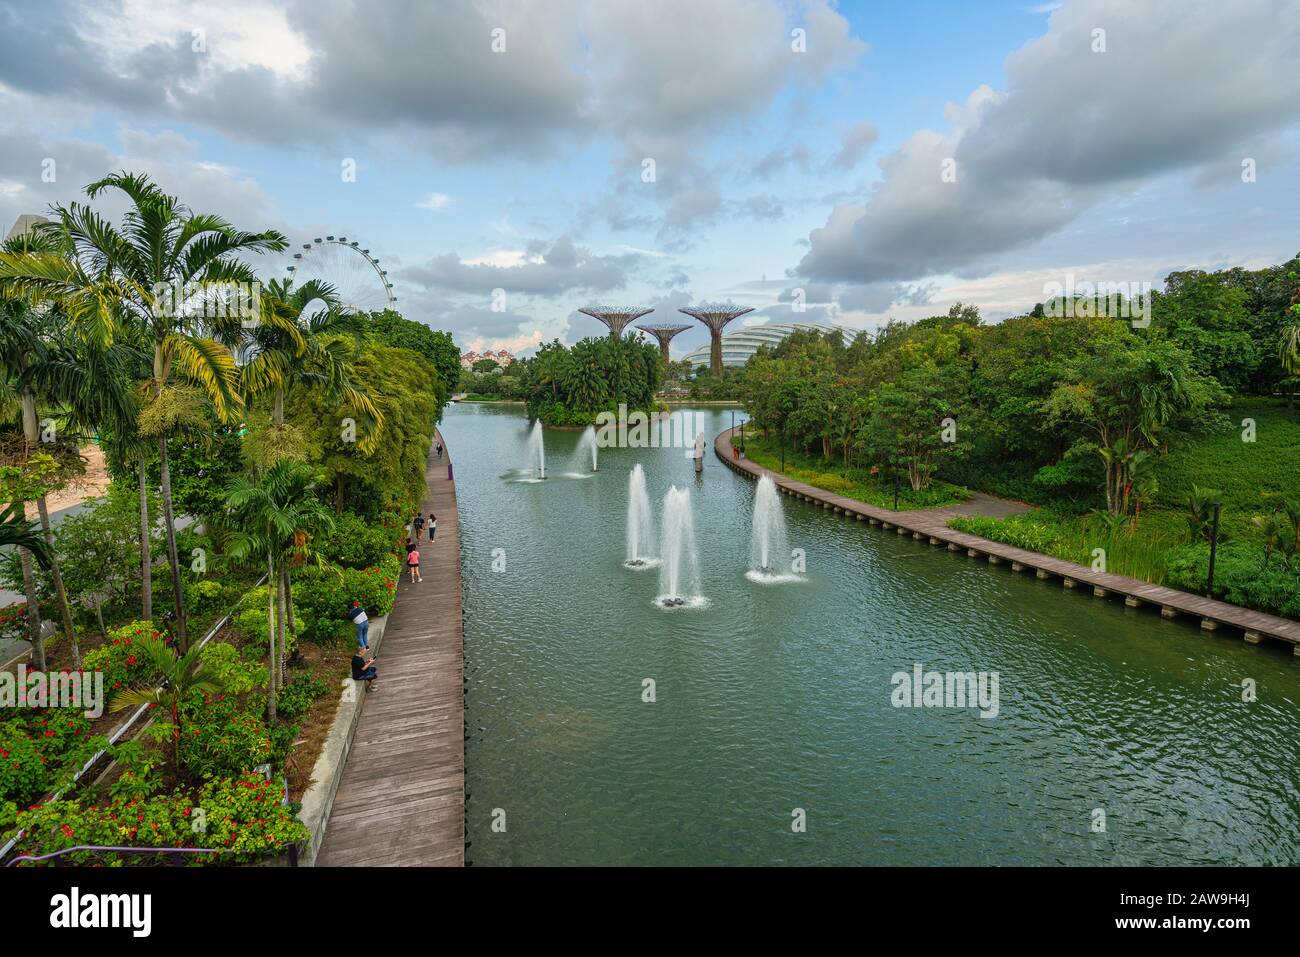 Singapour. Janvier 2020. La Fonctionnalité ensemble de l'installation numérique sur le lac Dragonfly au coucher du soleil Banque D'Images